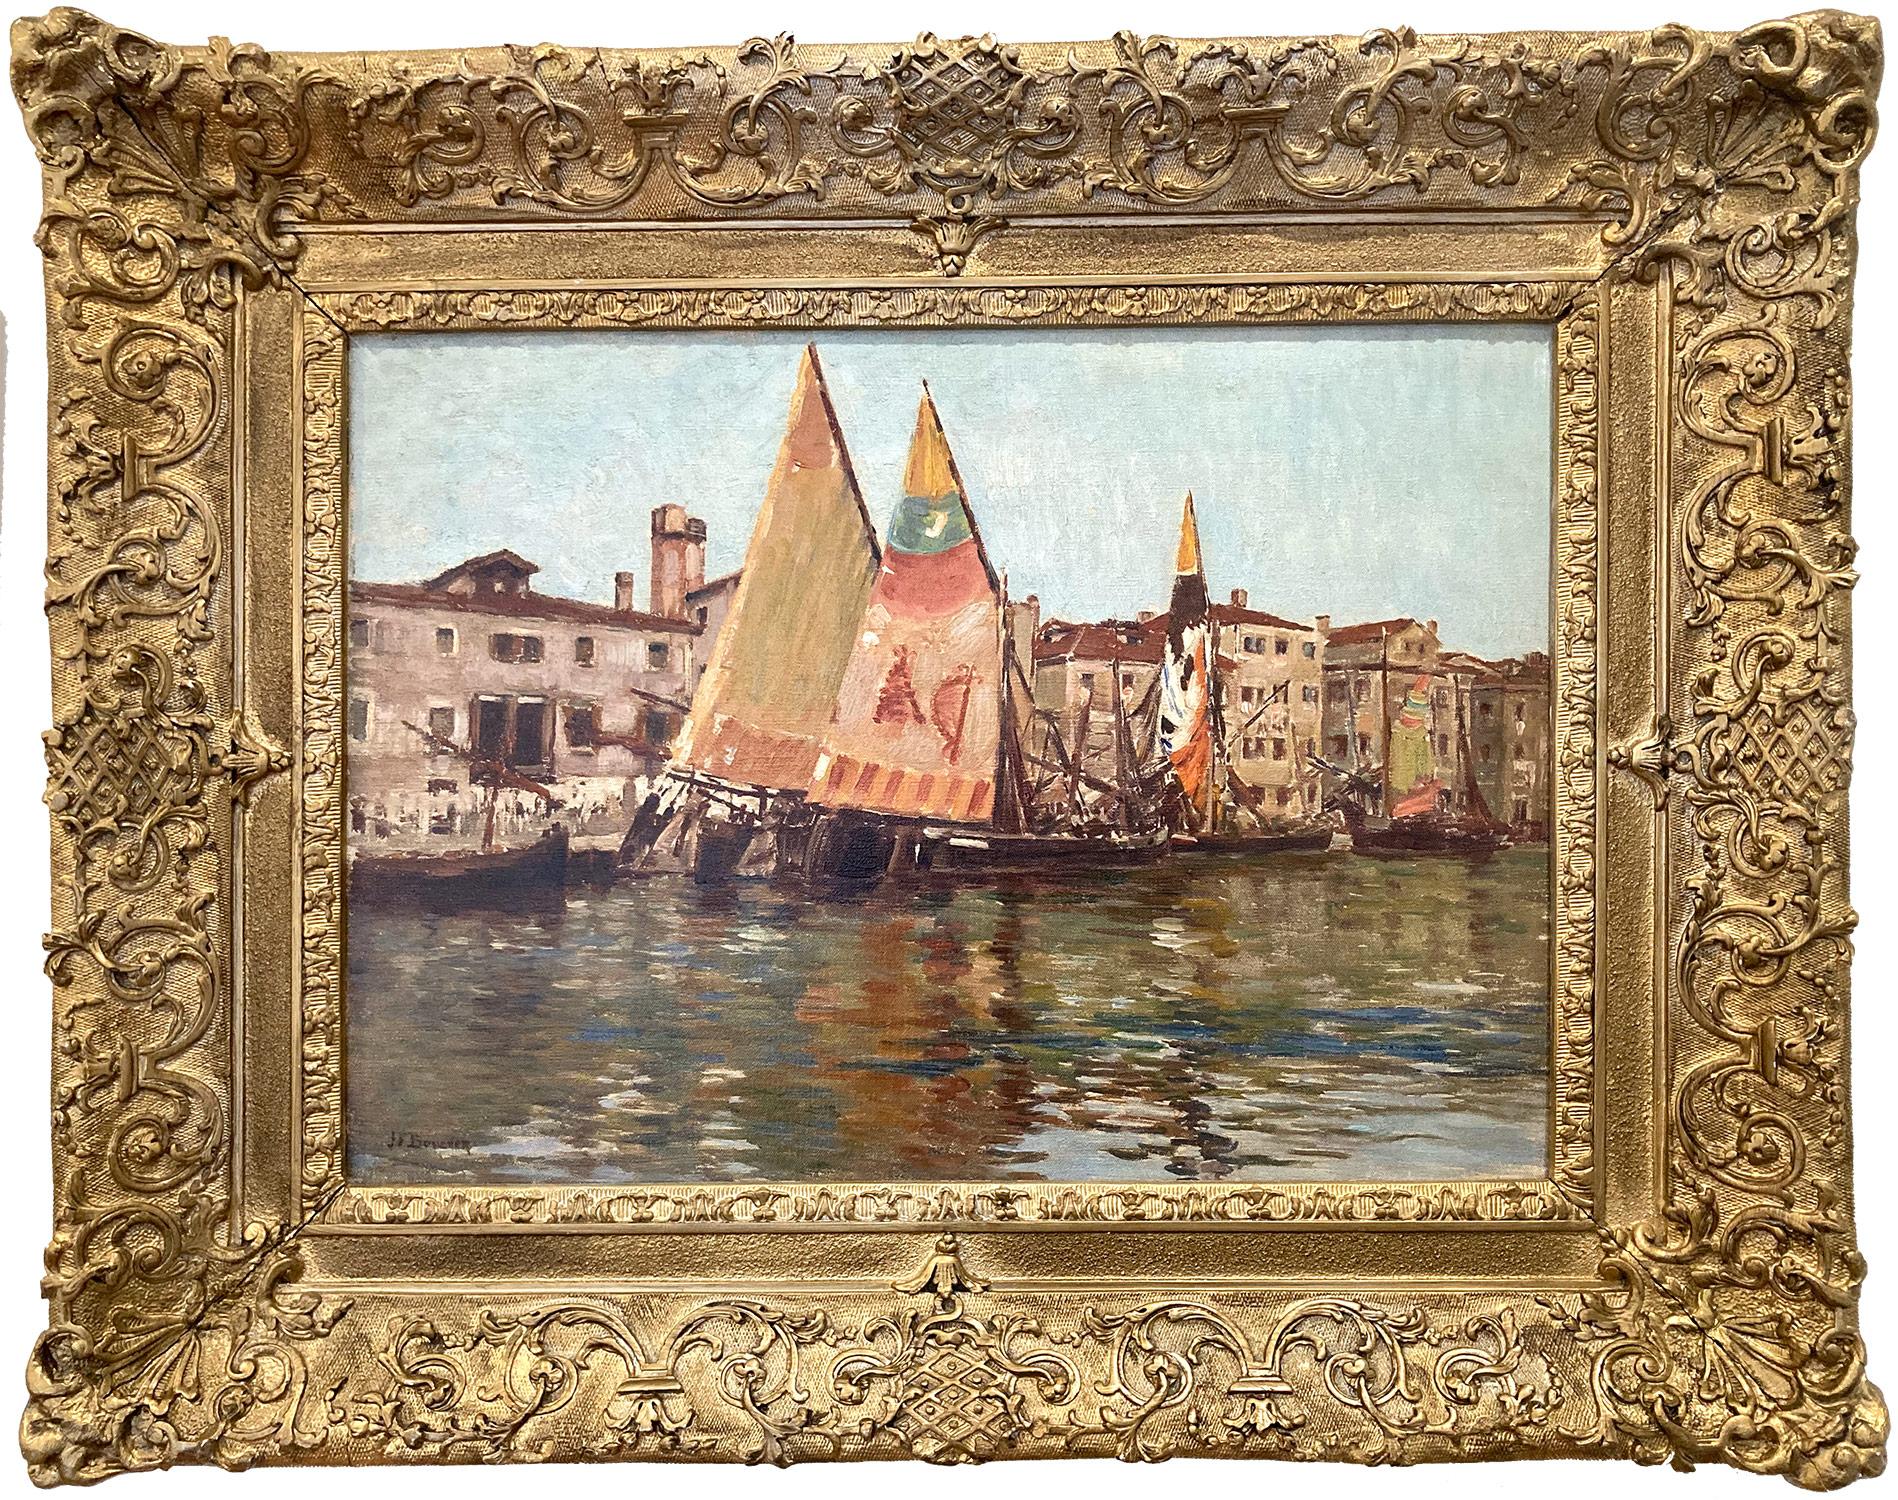 Joseph Félix Bouchor  Landscape Painting - "Les Péottes de Chioggia" Italian Boats Scene in Venice Oil Painting on Canvas